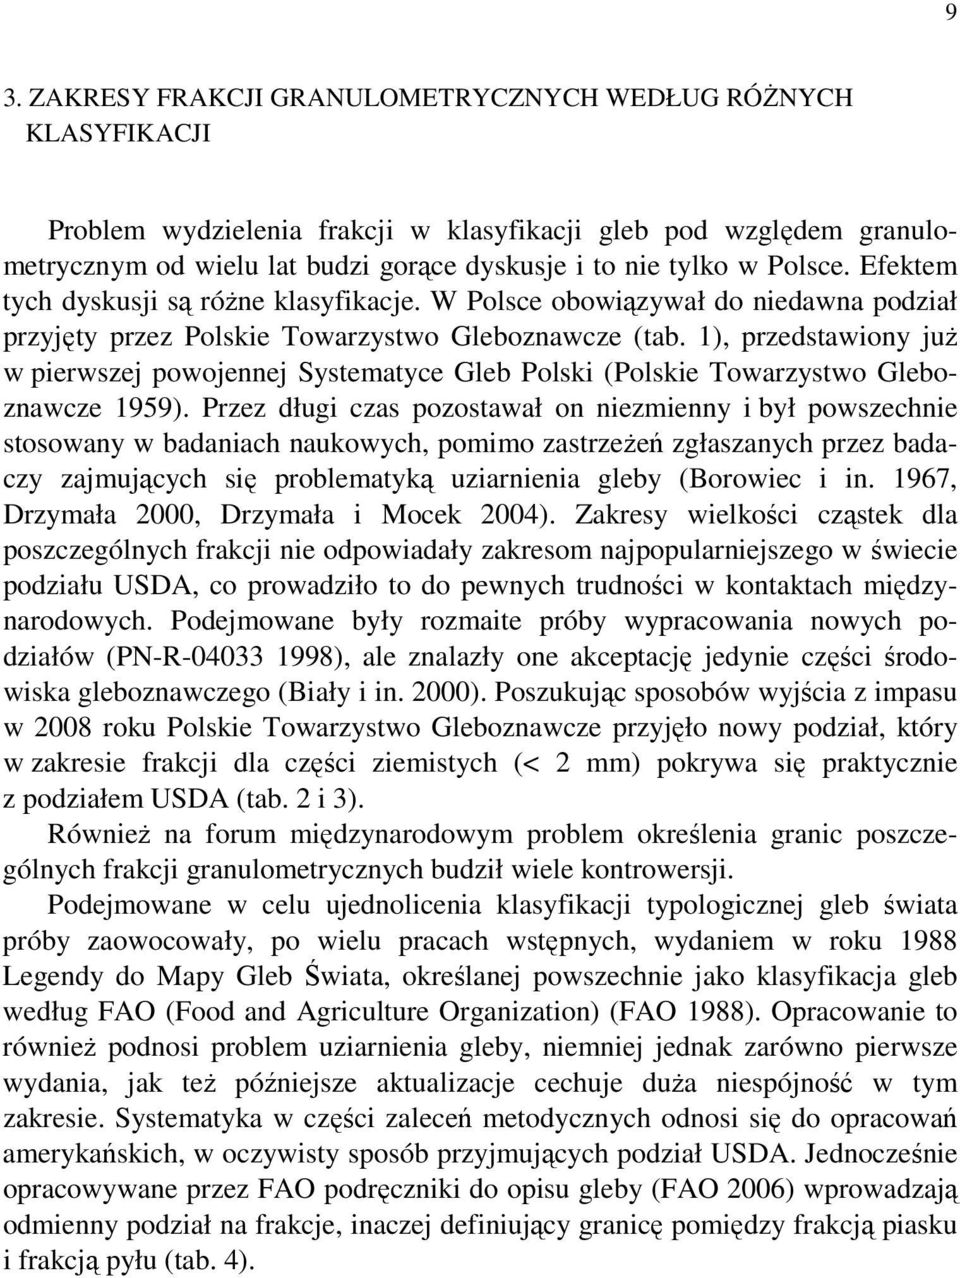 1), przedstawiony juŝ w pierwszej powojennej Systematyce Gleb Polski (Polskie Towarzystwo Gleboznawcze 1959).